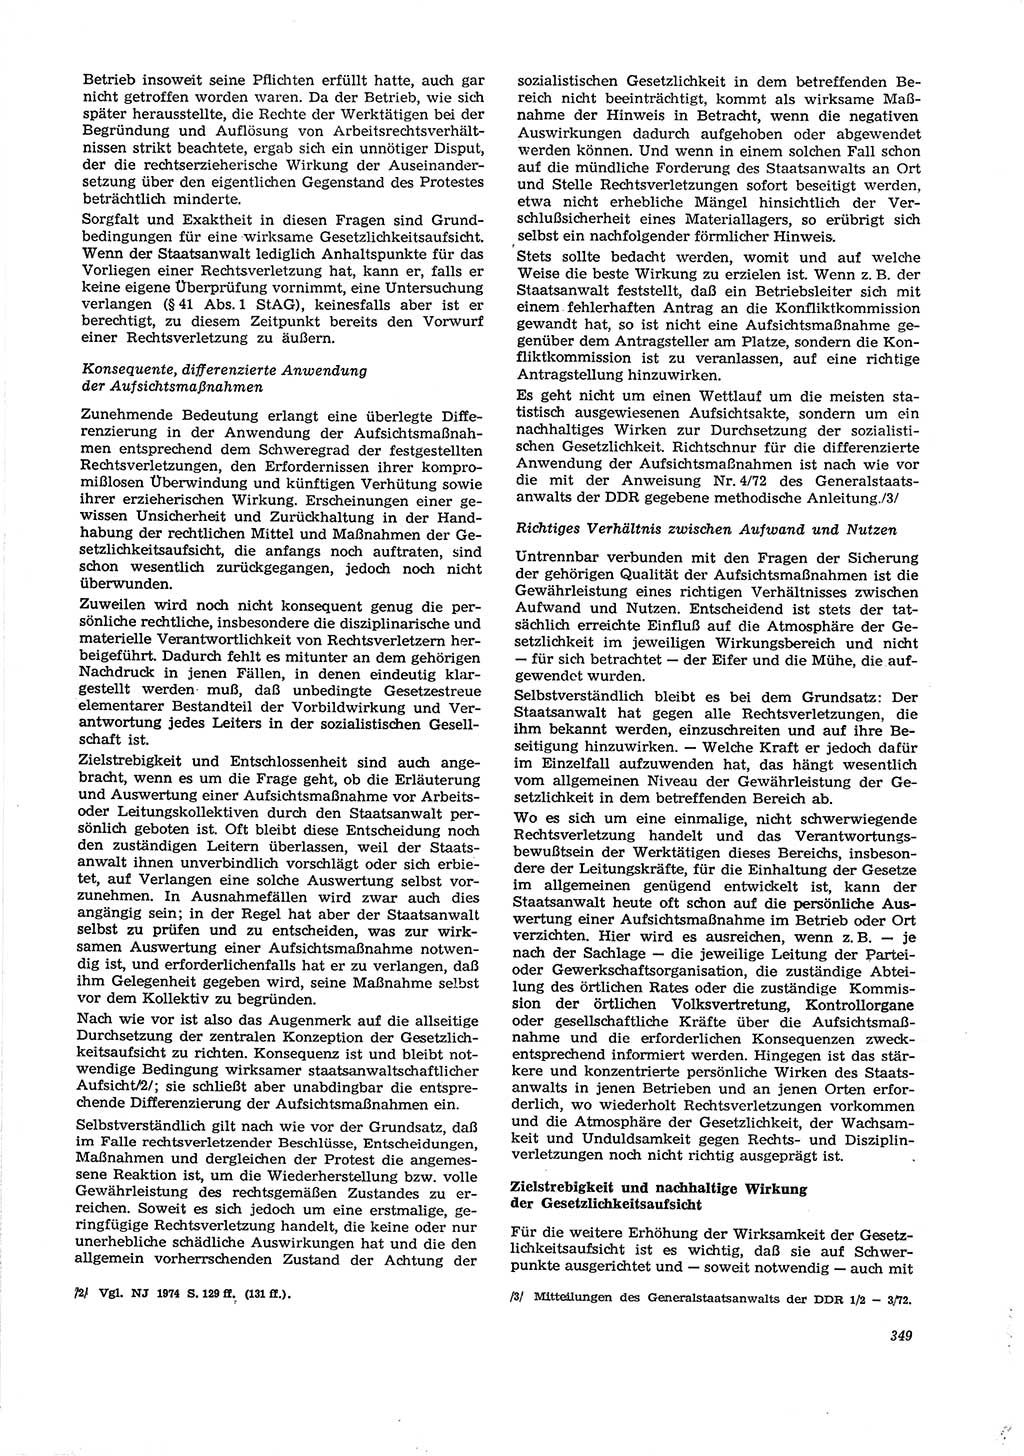 Neue Justiz (NJ), Zeitschrift für Recht und Rechtswissenschaft [Deutsche Demokratische Republik (DDR)], 29. Jahrgang 1975, Seite 349 (NJ DDR 1975, S. 349)